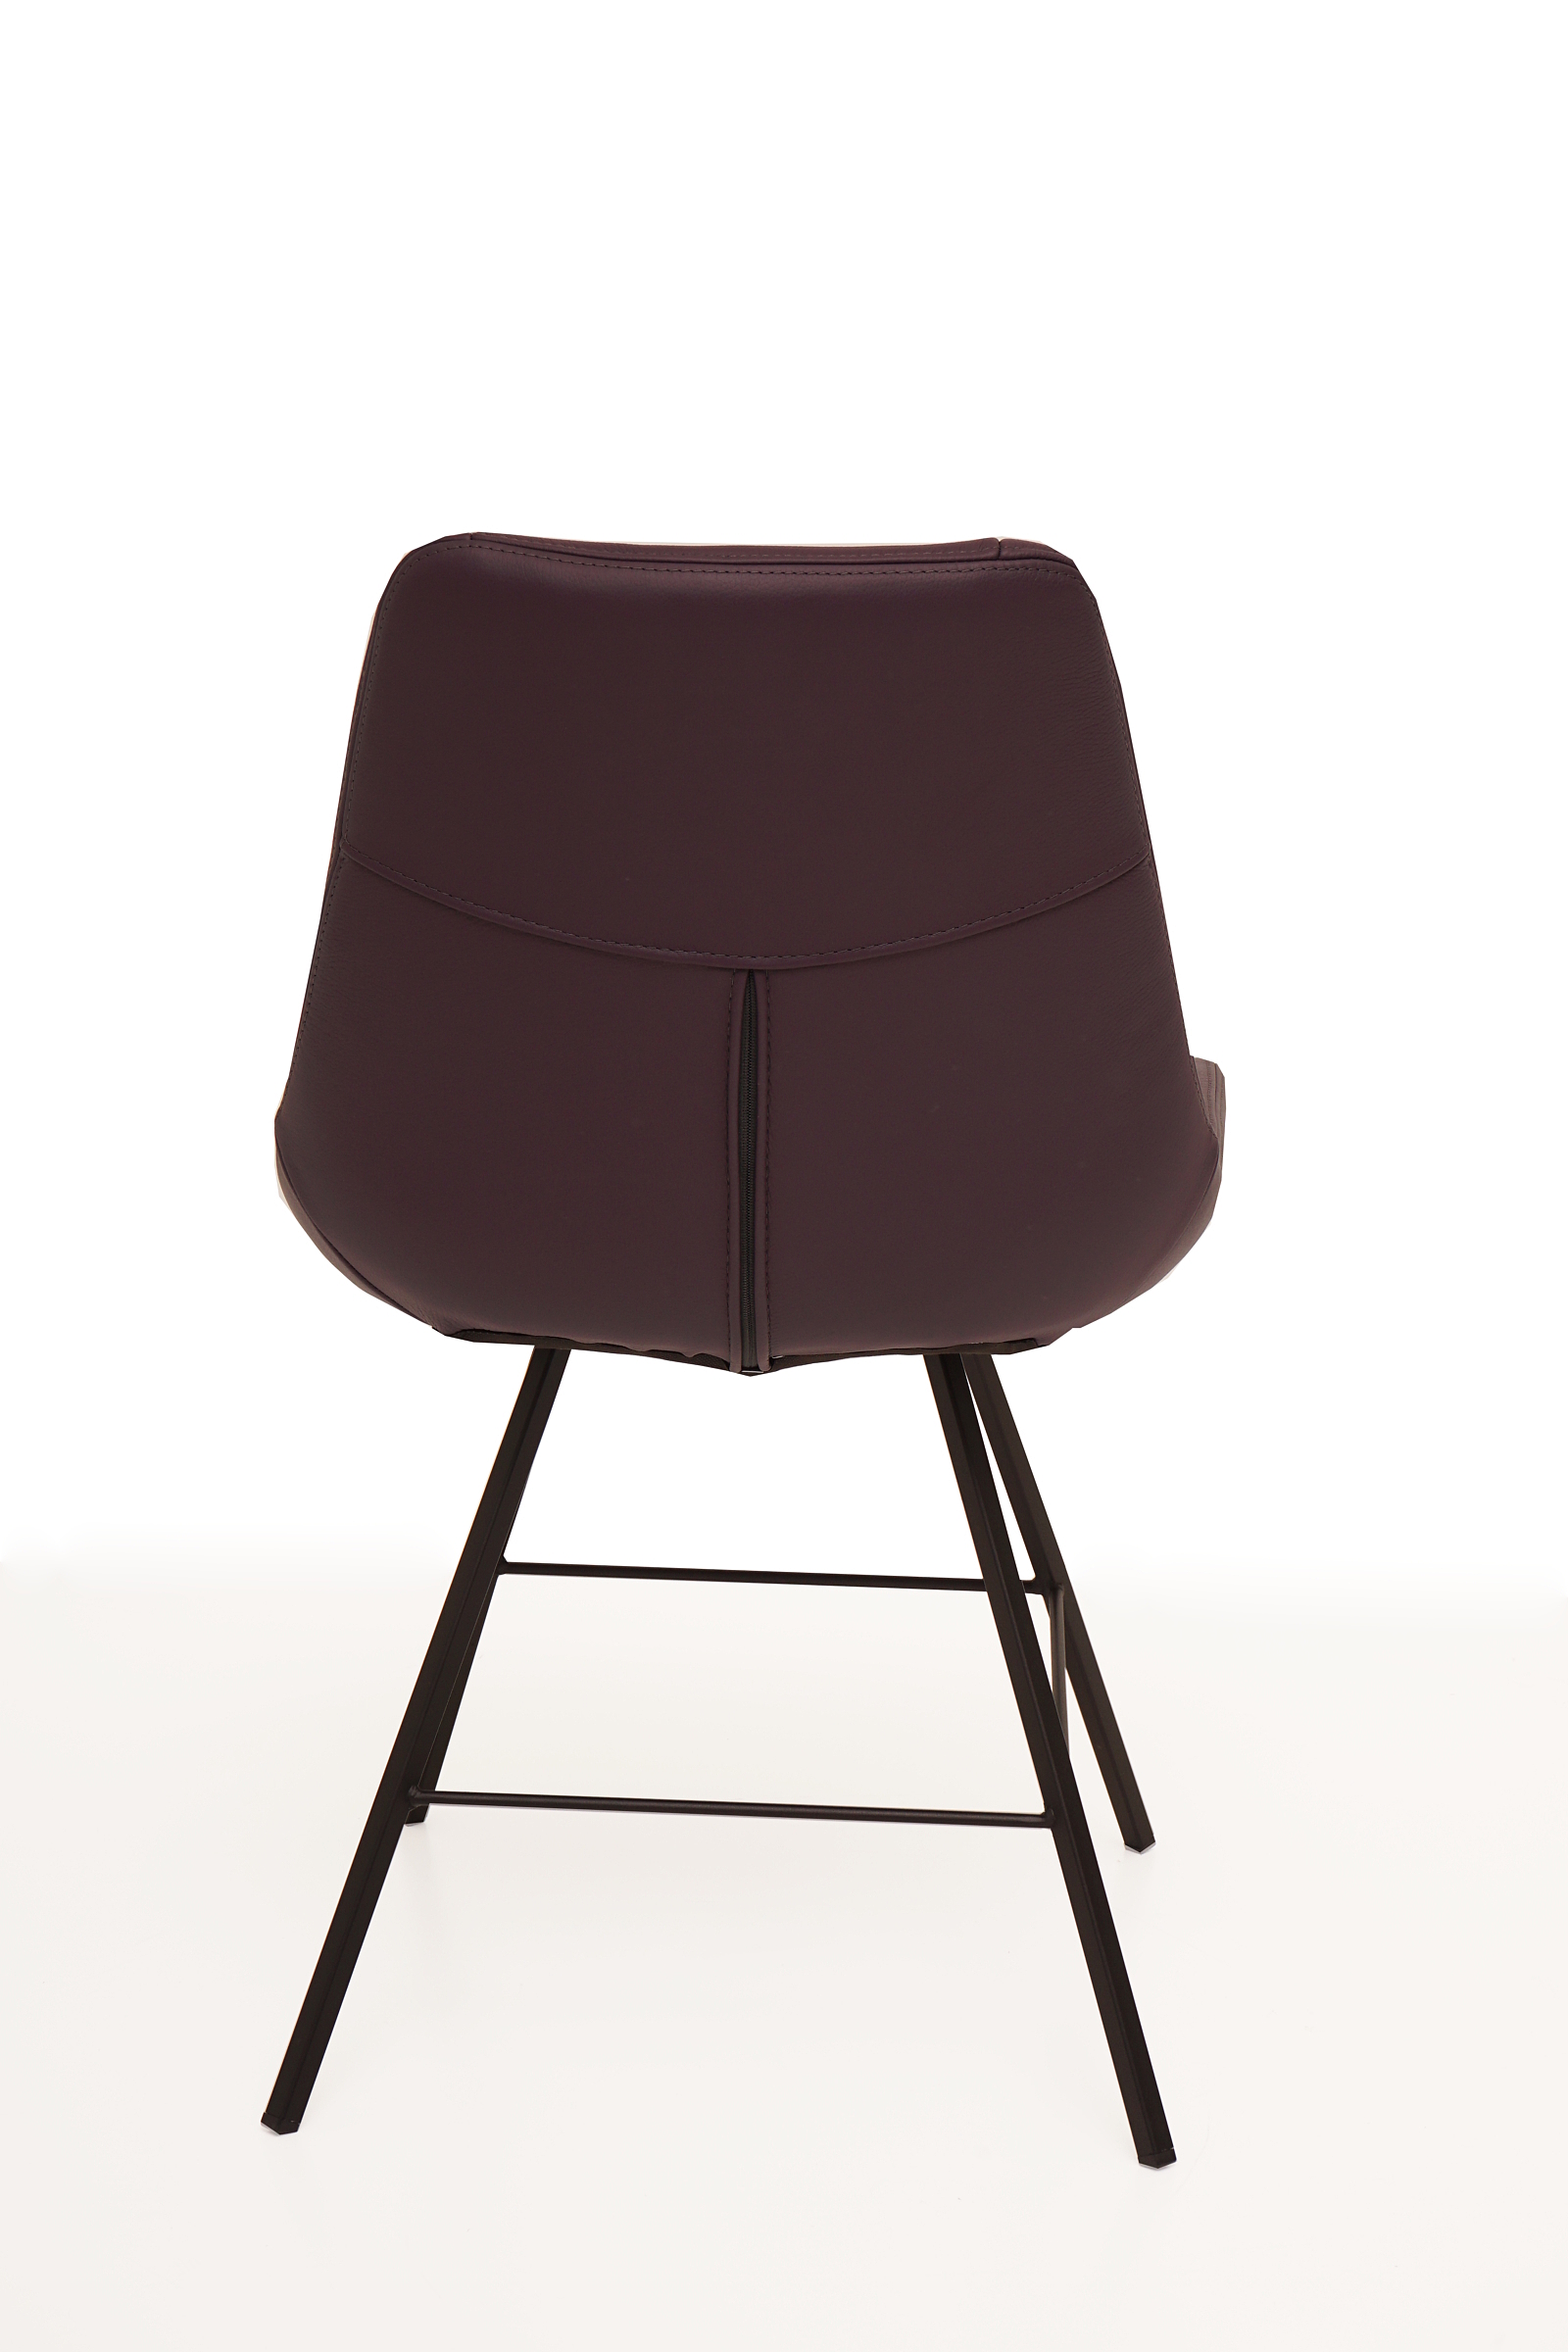 Carmen1 nowoczesne krzesło do jadalni i salonu modern